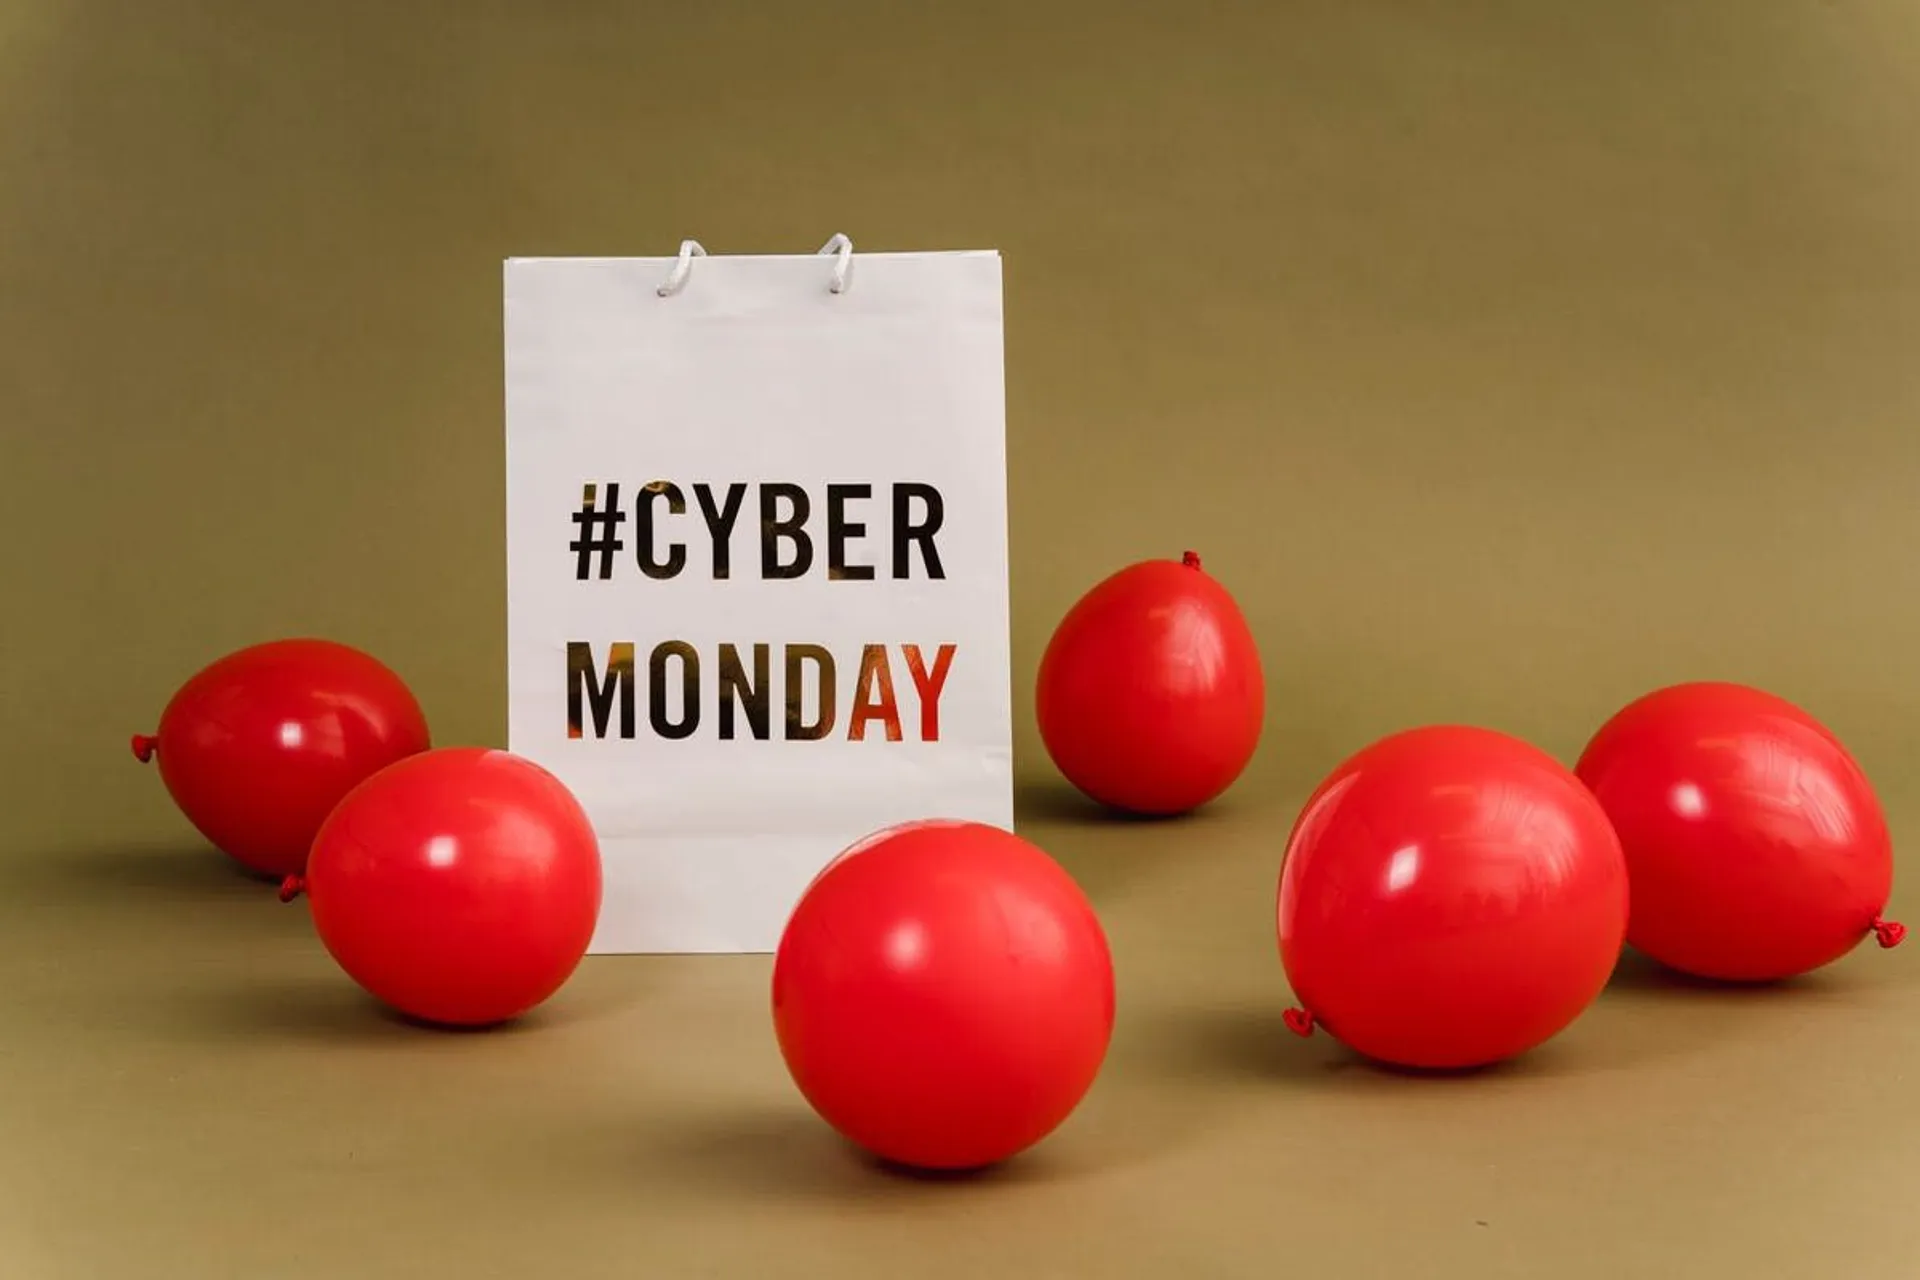 Verpassen Sie nicht diese fantastischen Cyber Monday-Angebote